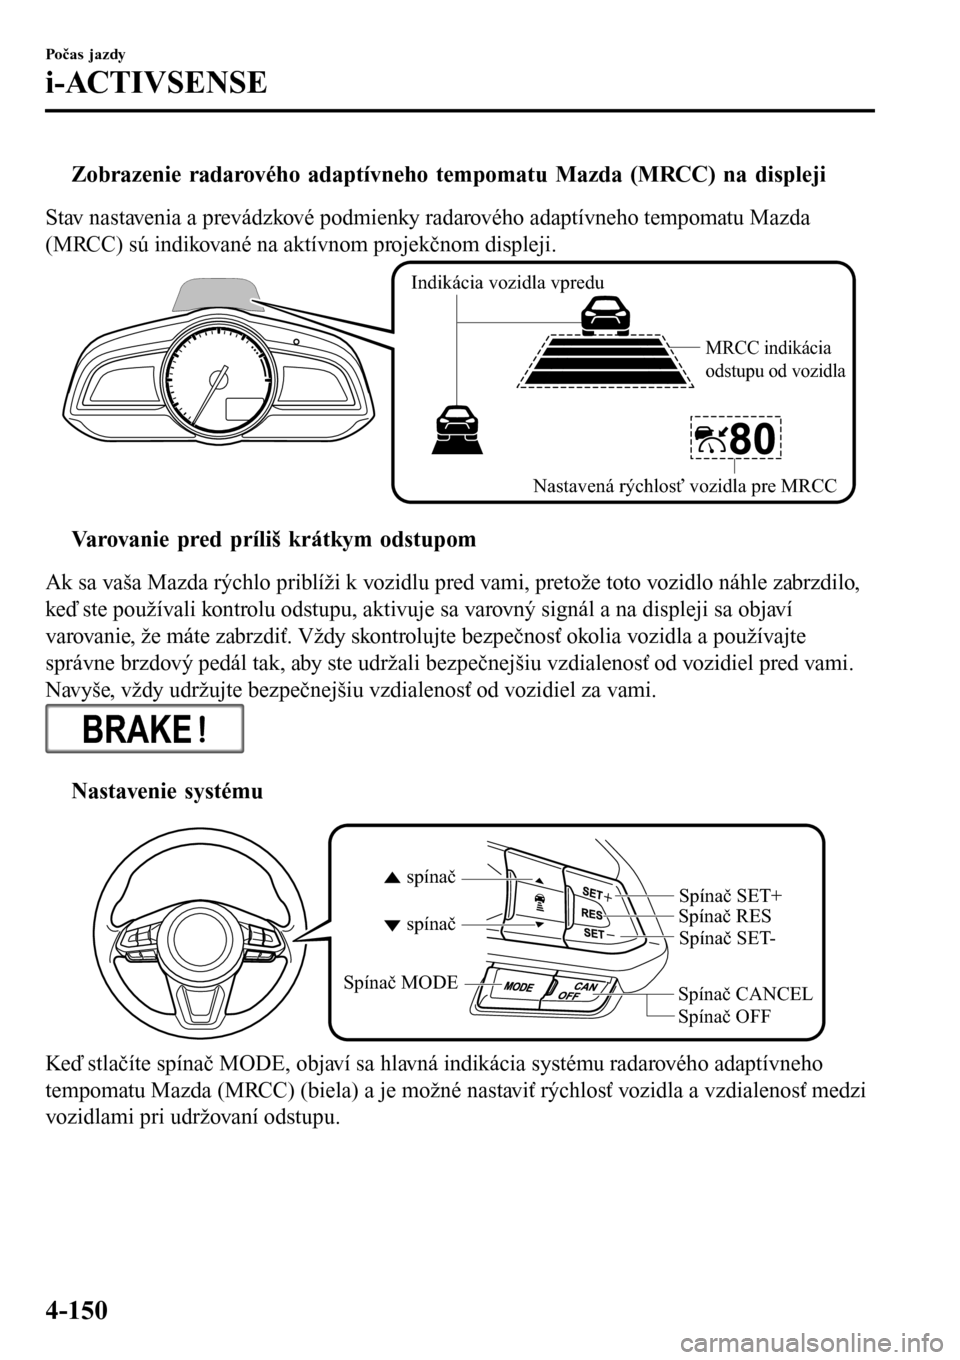 MAZDA MODEL 3 HATCHBACK 2016  Užívateľská príručka (in Slovak) tZobrazenie radarového adaptívneho tempomatu Mazda (MRCC) na displeji
Stav nastavenia a prevádzkové podmienky radarového adaptívneho tempomatu Mazda
(MRCC) sú indikované na aktívnom projekčn